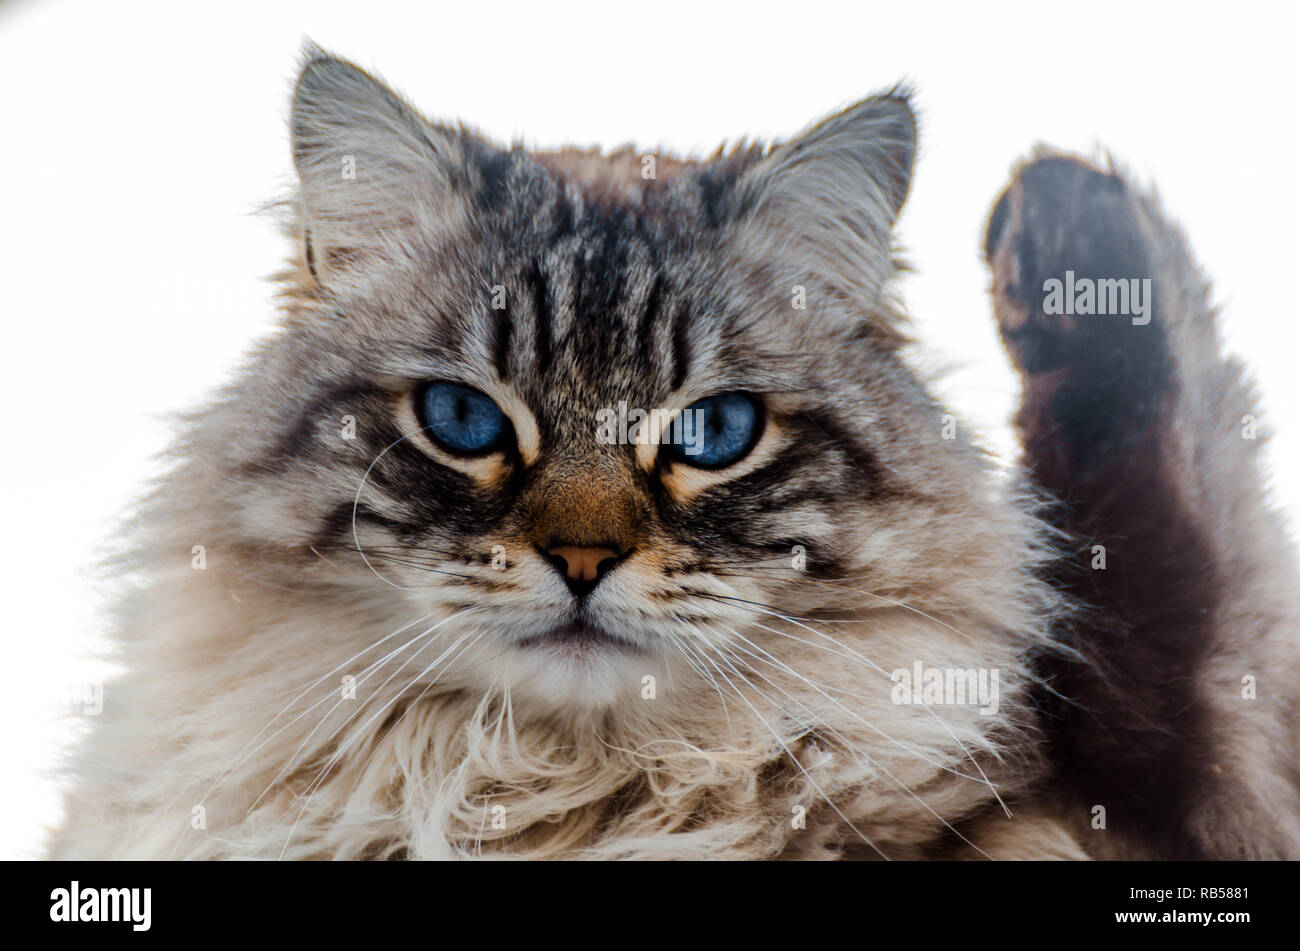 Magnifique Chat A Poil Long Aux Yeux Bleus Assis Dehors Animal Domestique Photo Stock Alamy